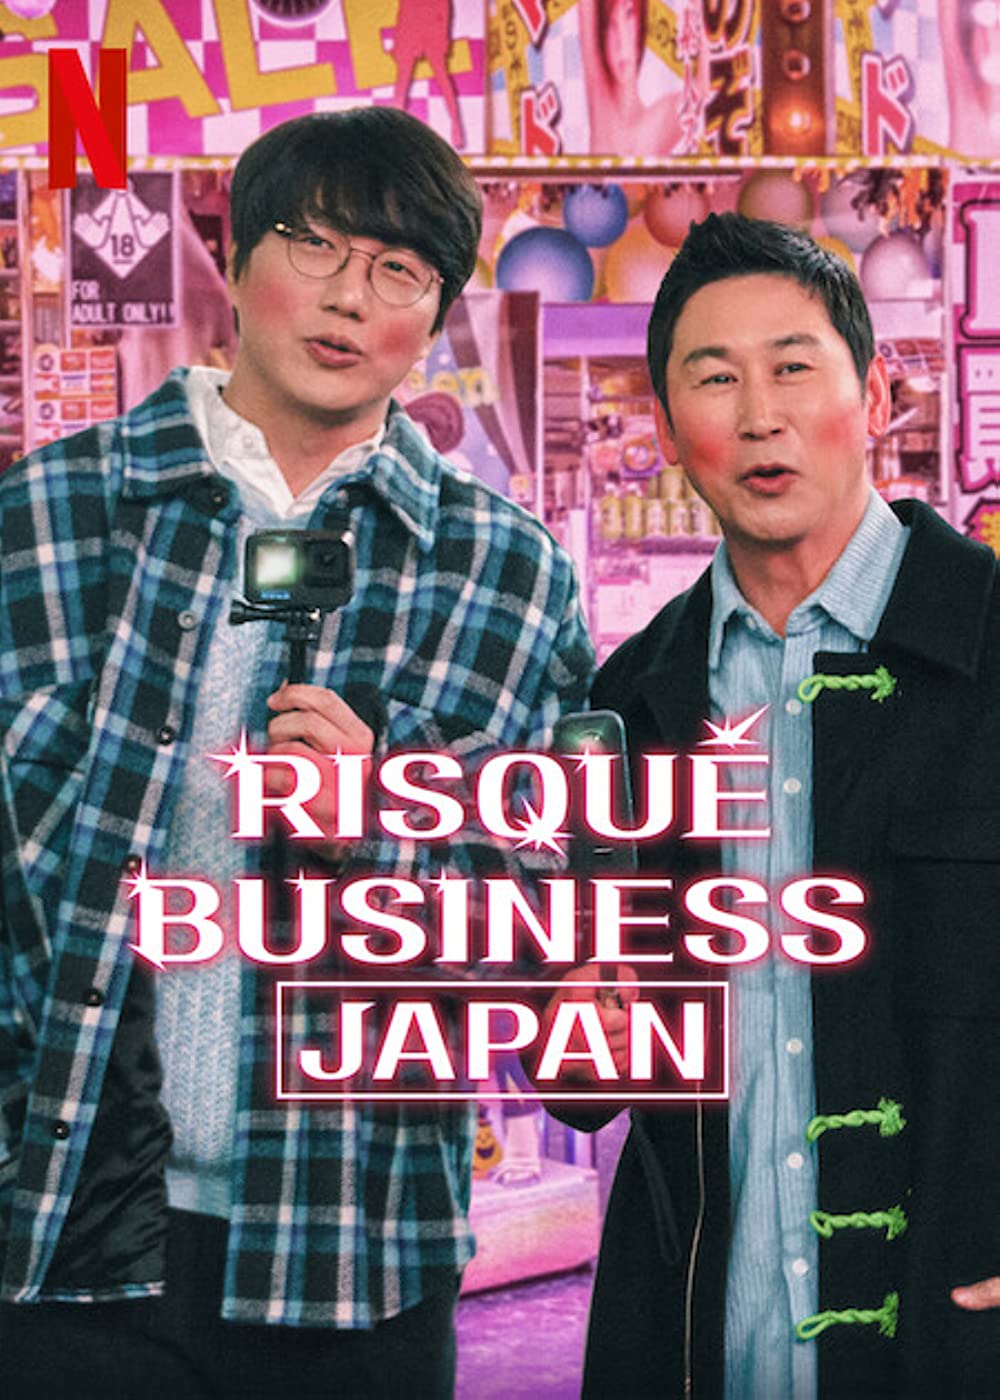 ดูหนังออนไลน์ฟรี Risqué Business Japan ธุรกิจติดเรท ญี่ปุ่น ซับไทย (จบ)